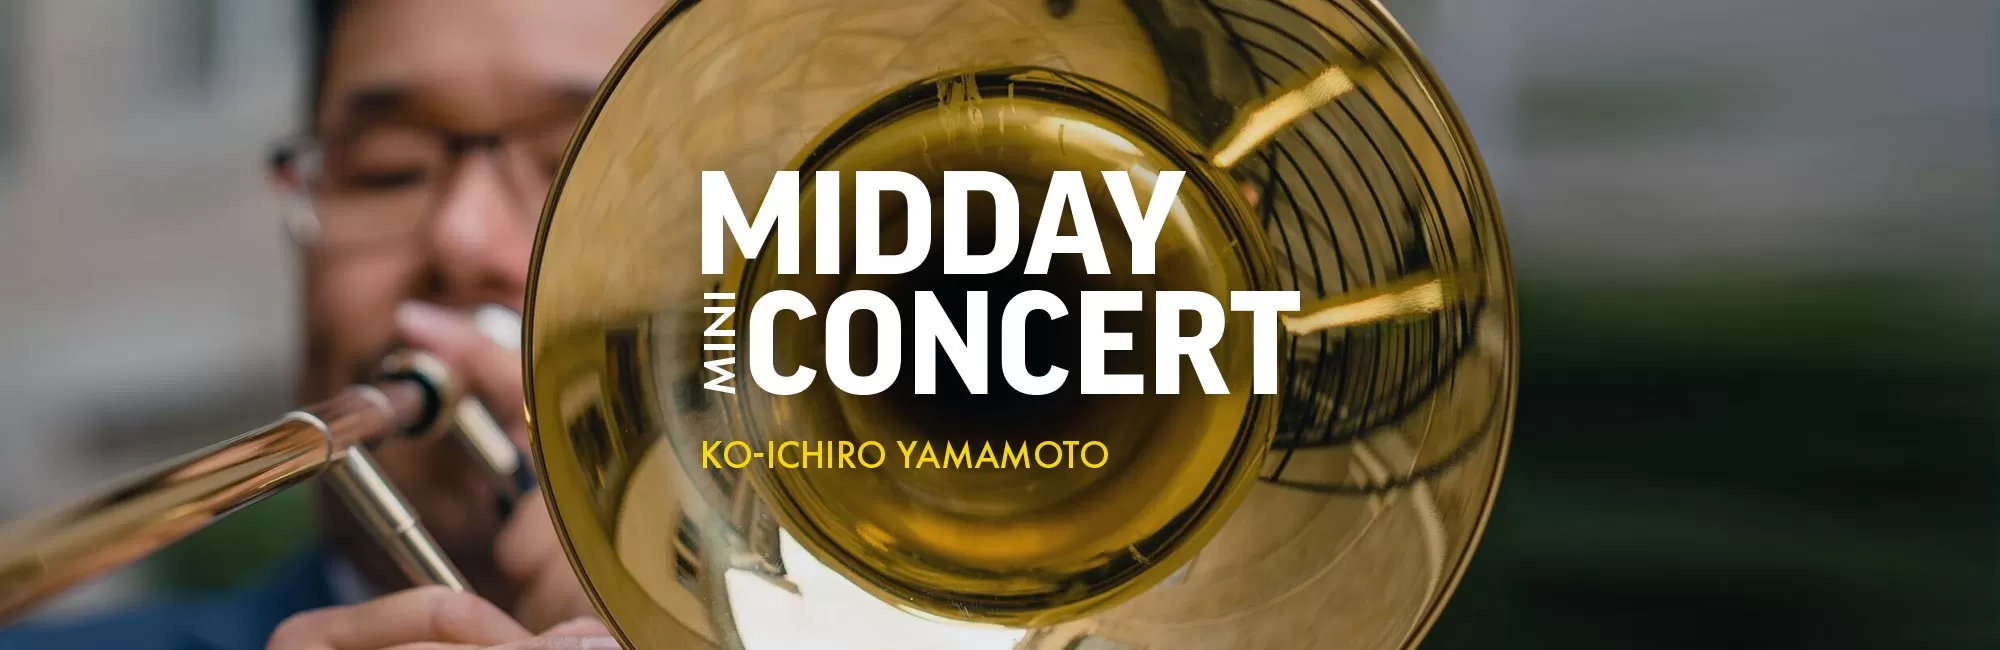 Midday Mini-Concert: Ko-ichiro Yamamoto